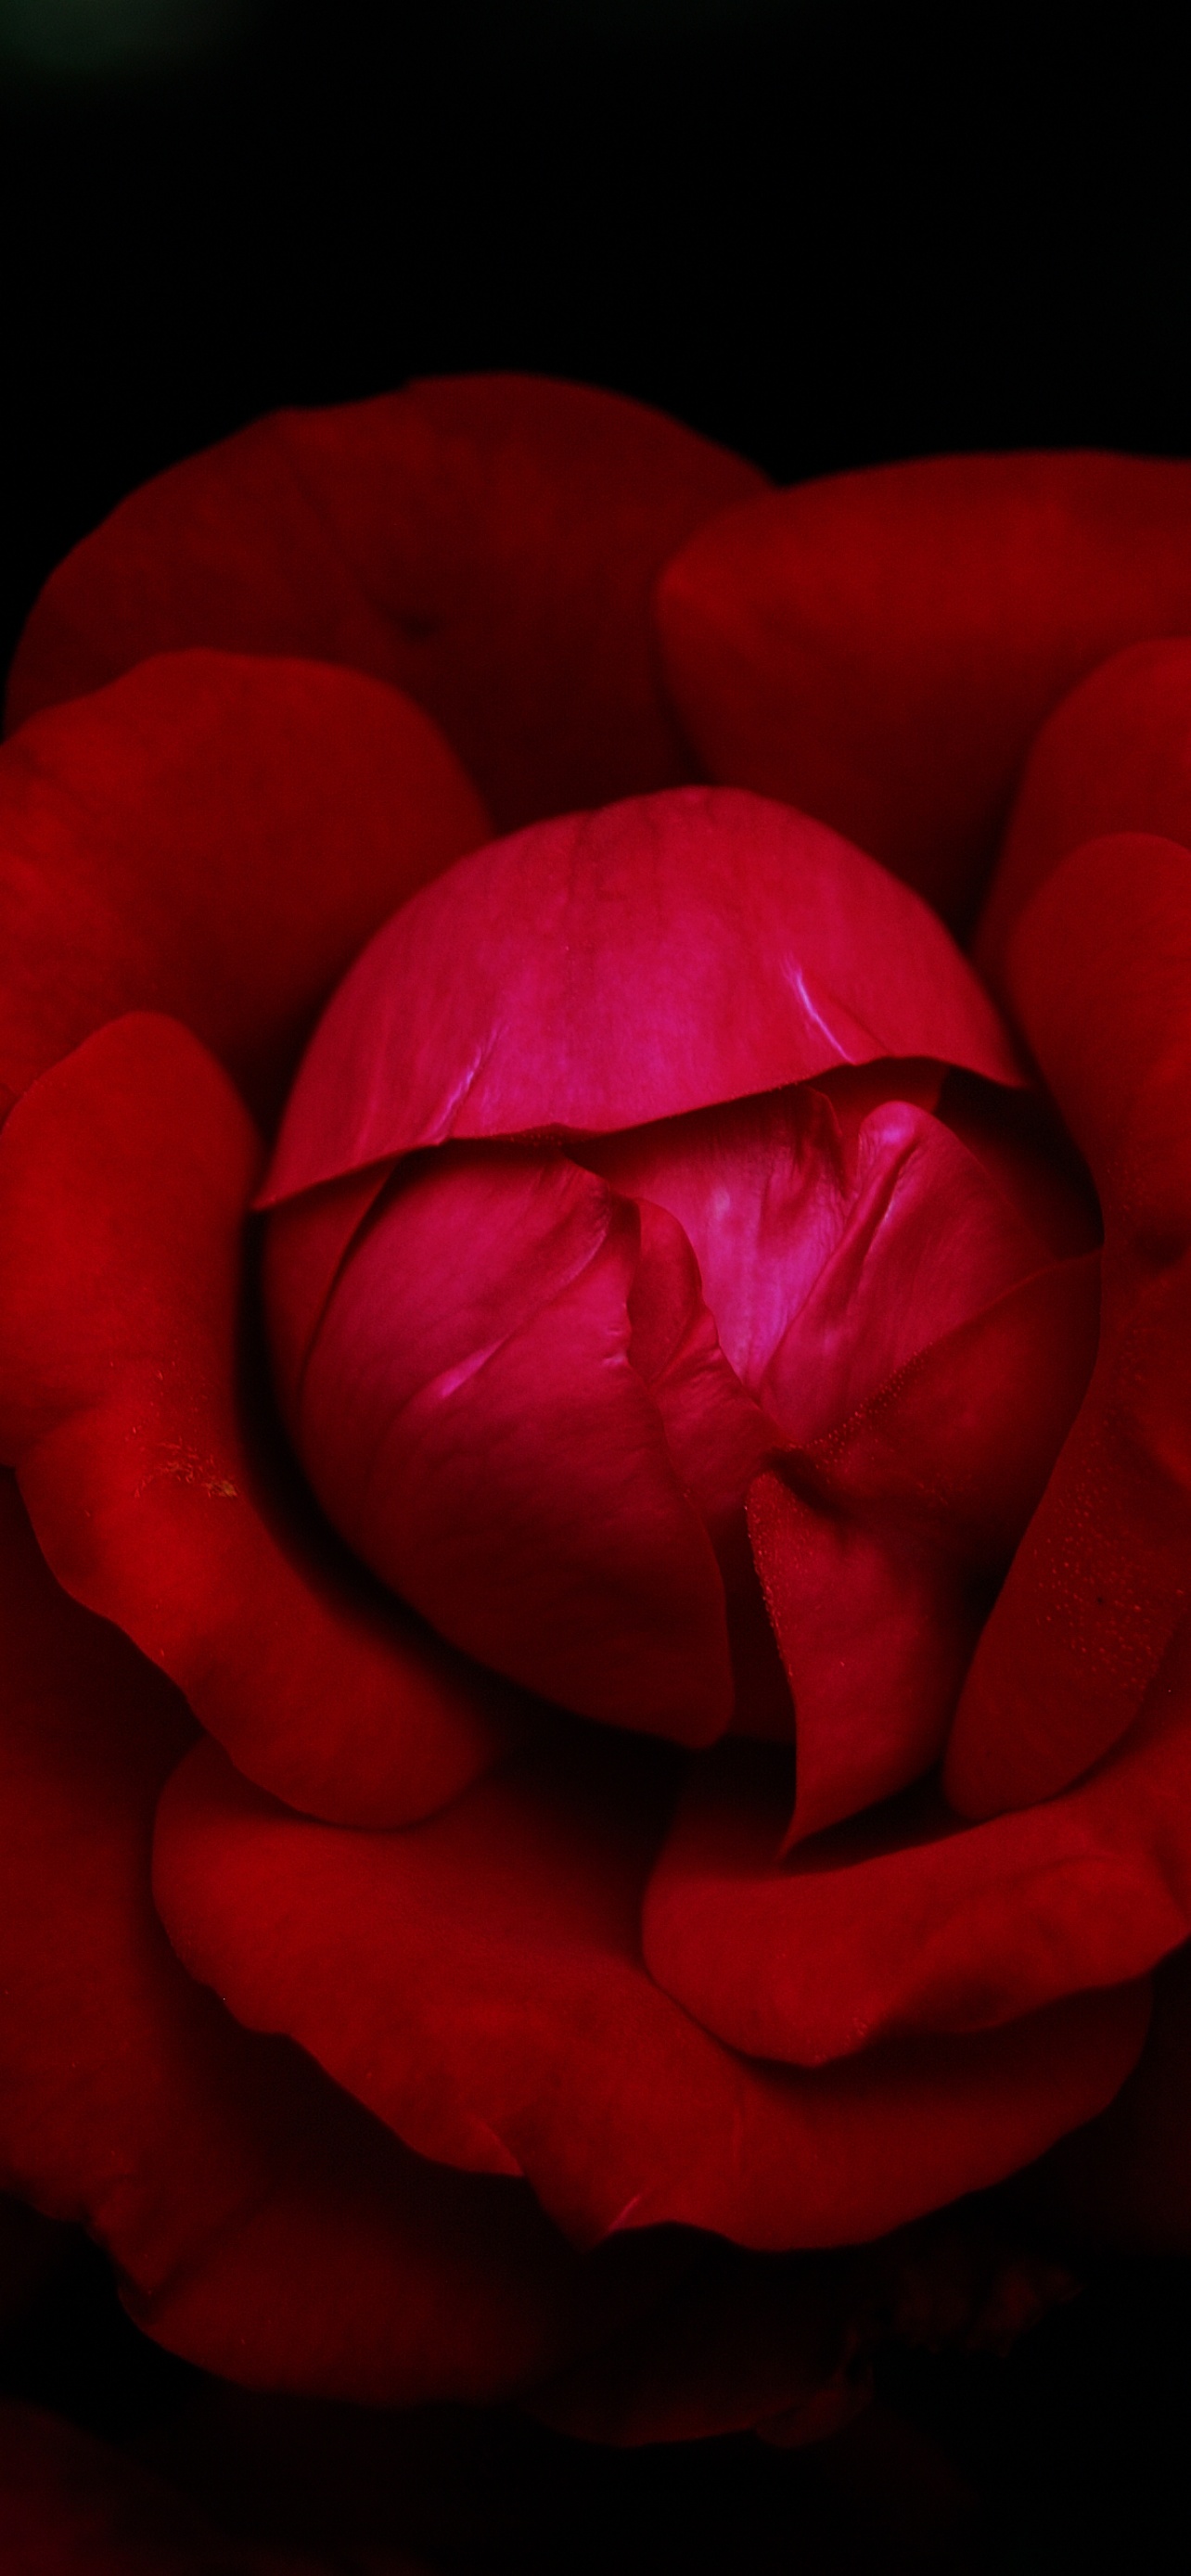 Hybrid tea rose Wallpaper 4K, Red Rose, Flowers, #6674